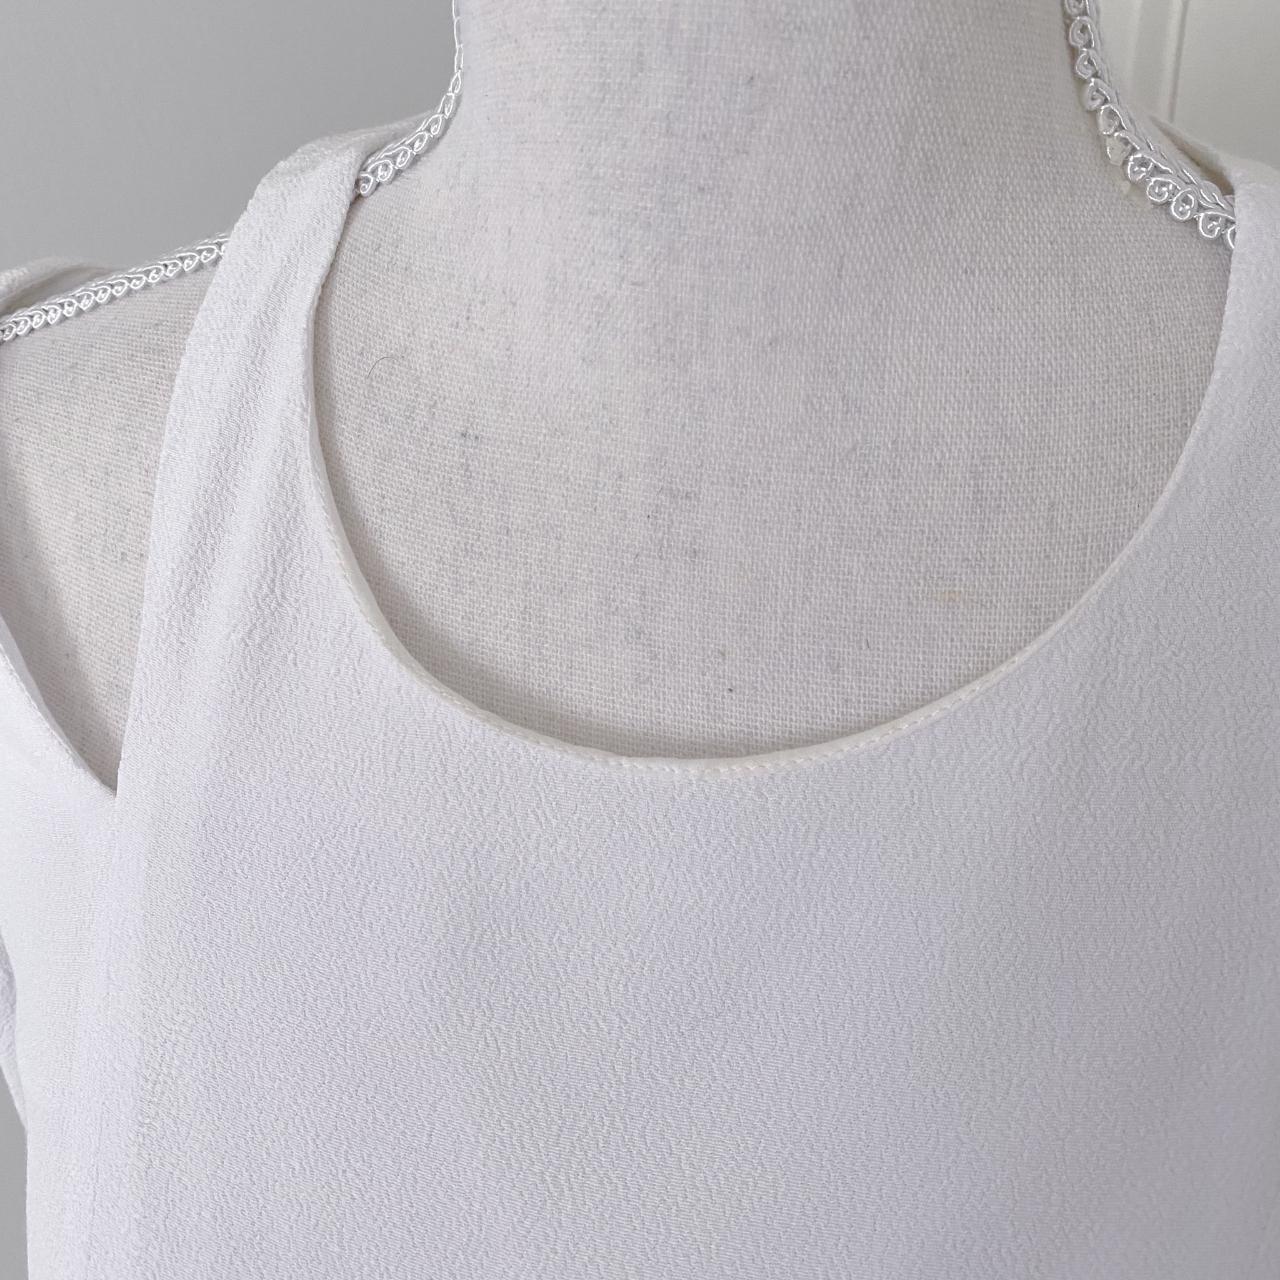 Product Image 3 - Sandro sheath dress
Size 1 (Equivalent